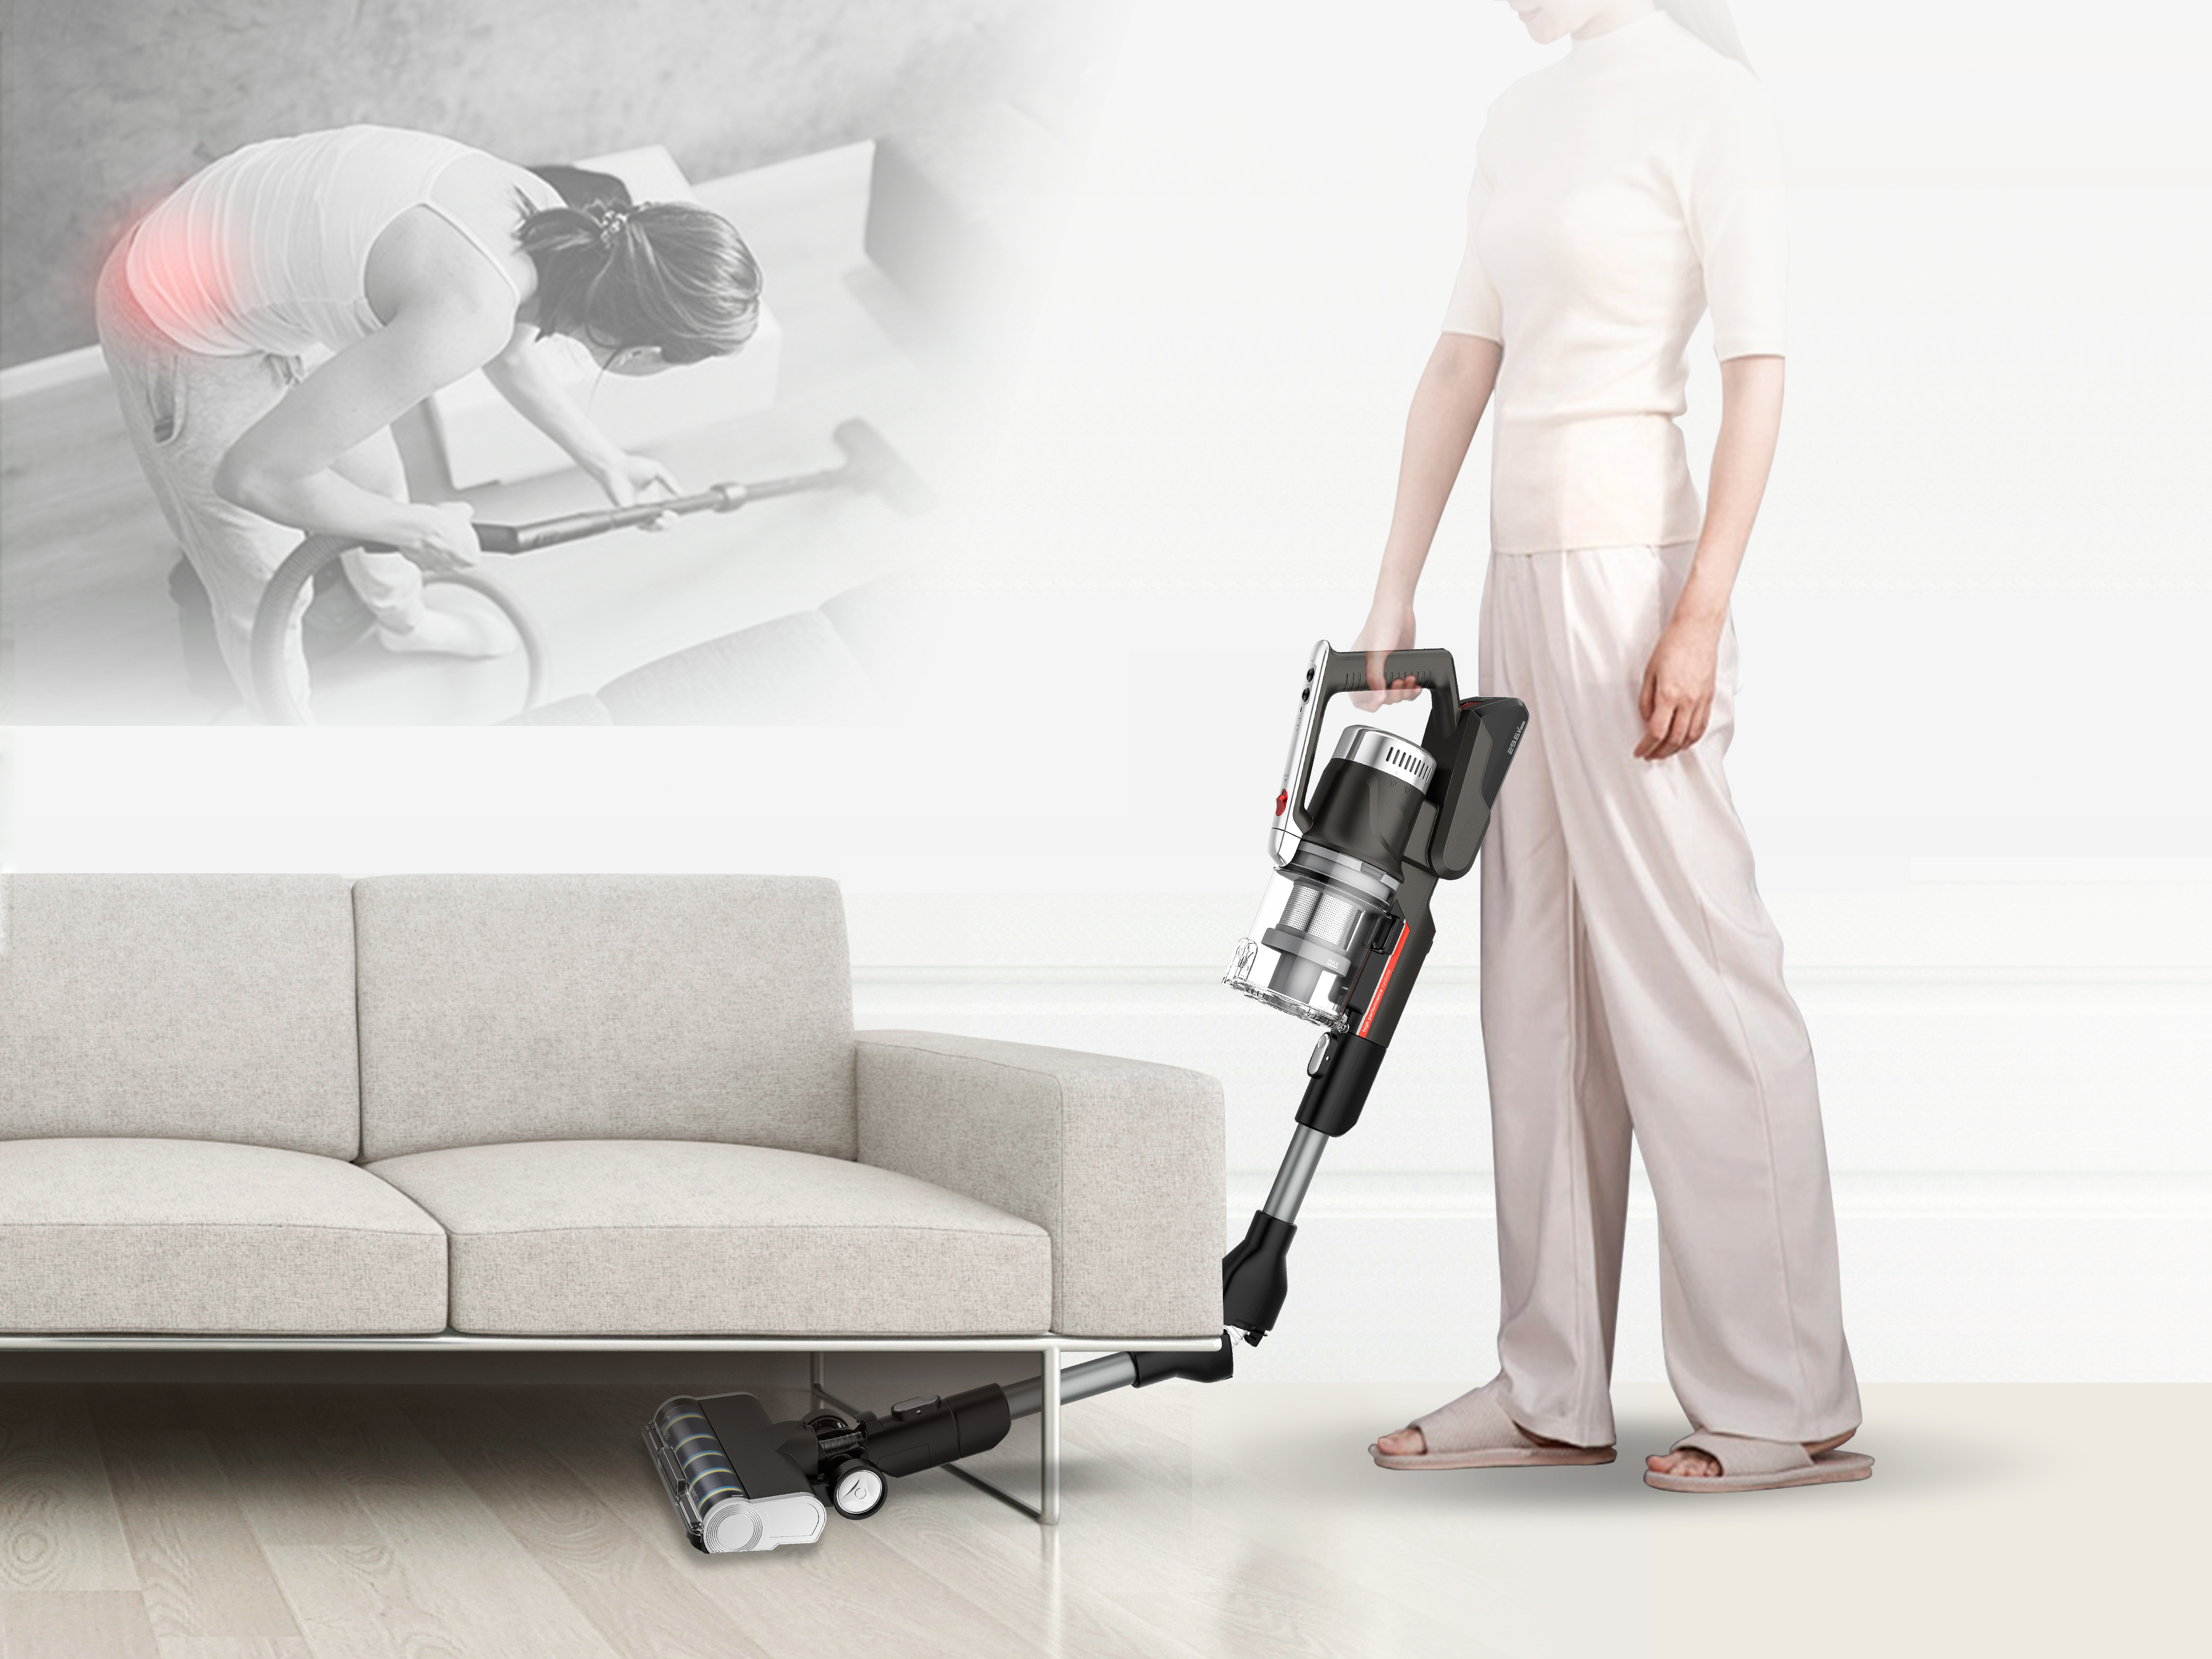 P7 Flex Handheld Cordless Vacuum Cleaner